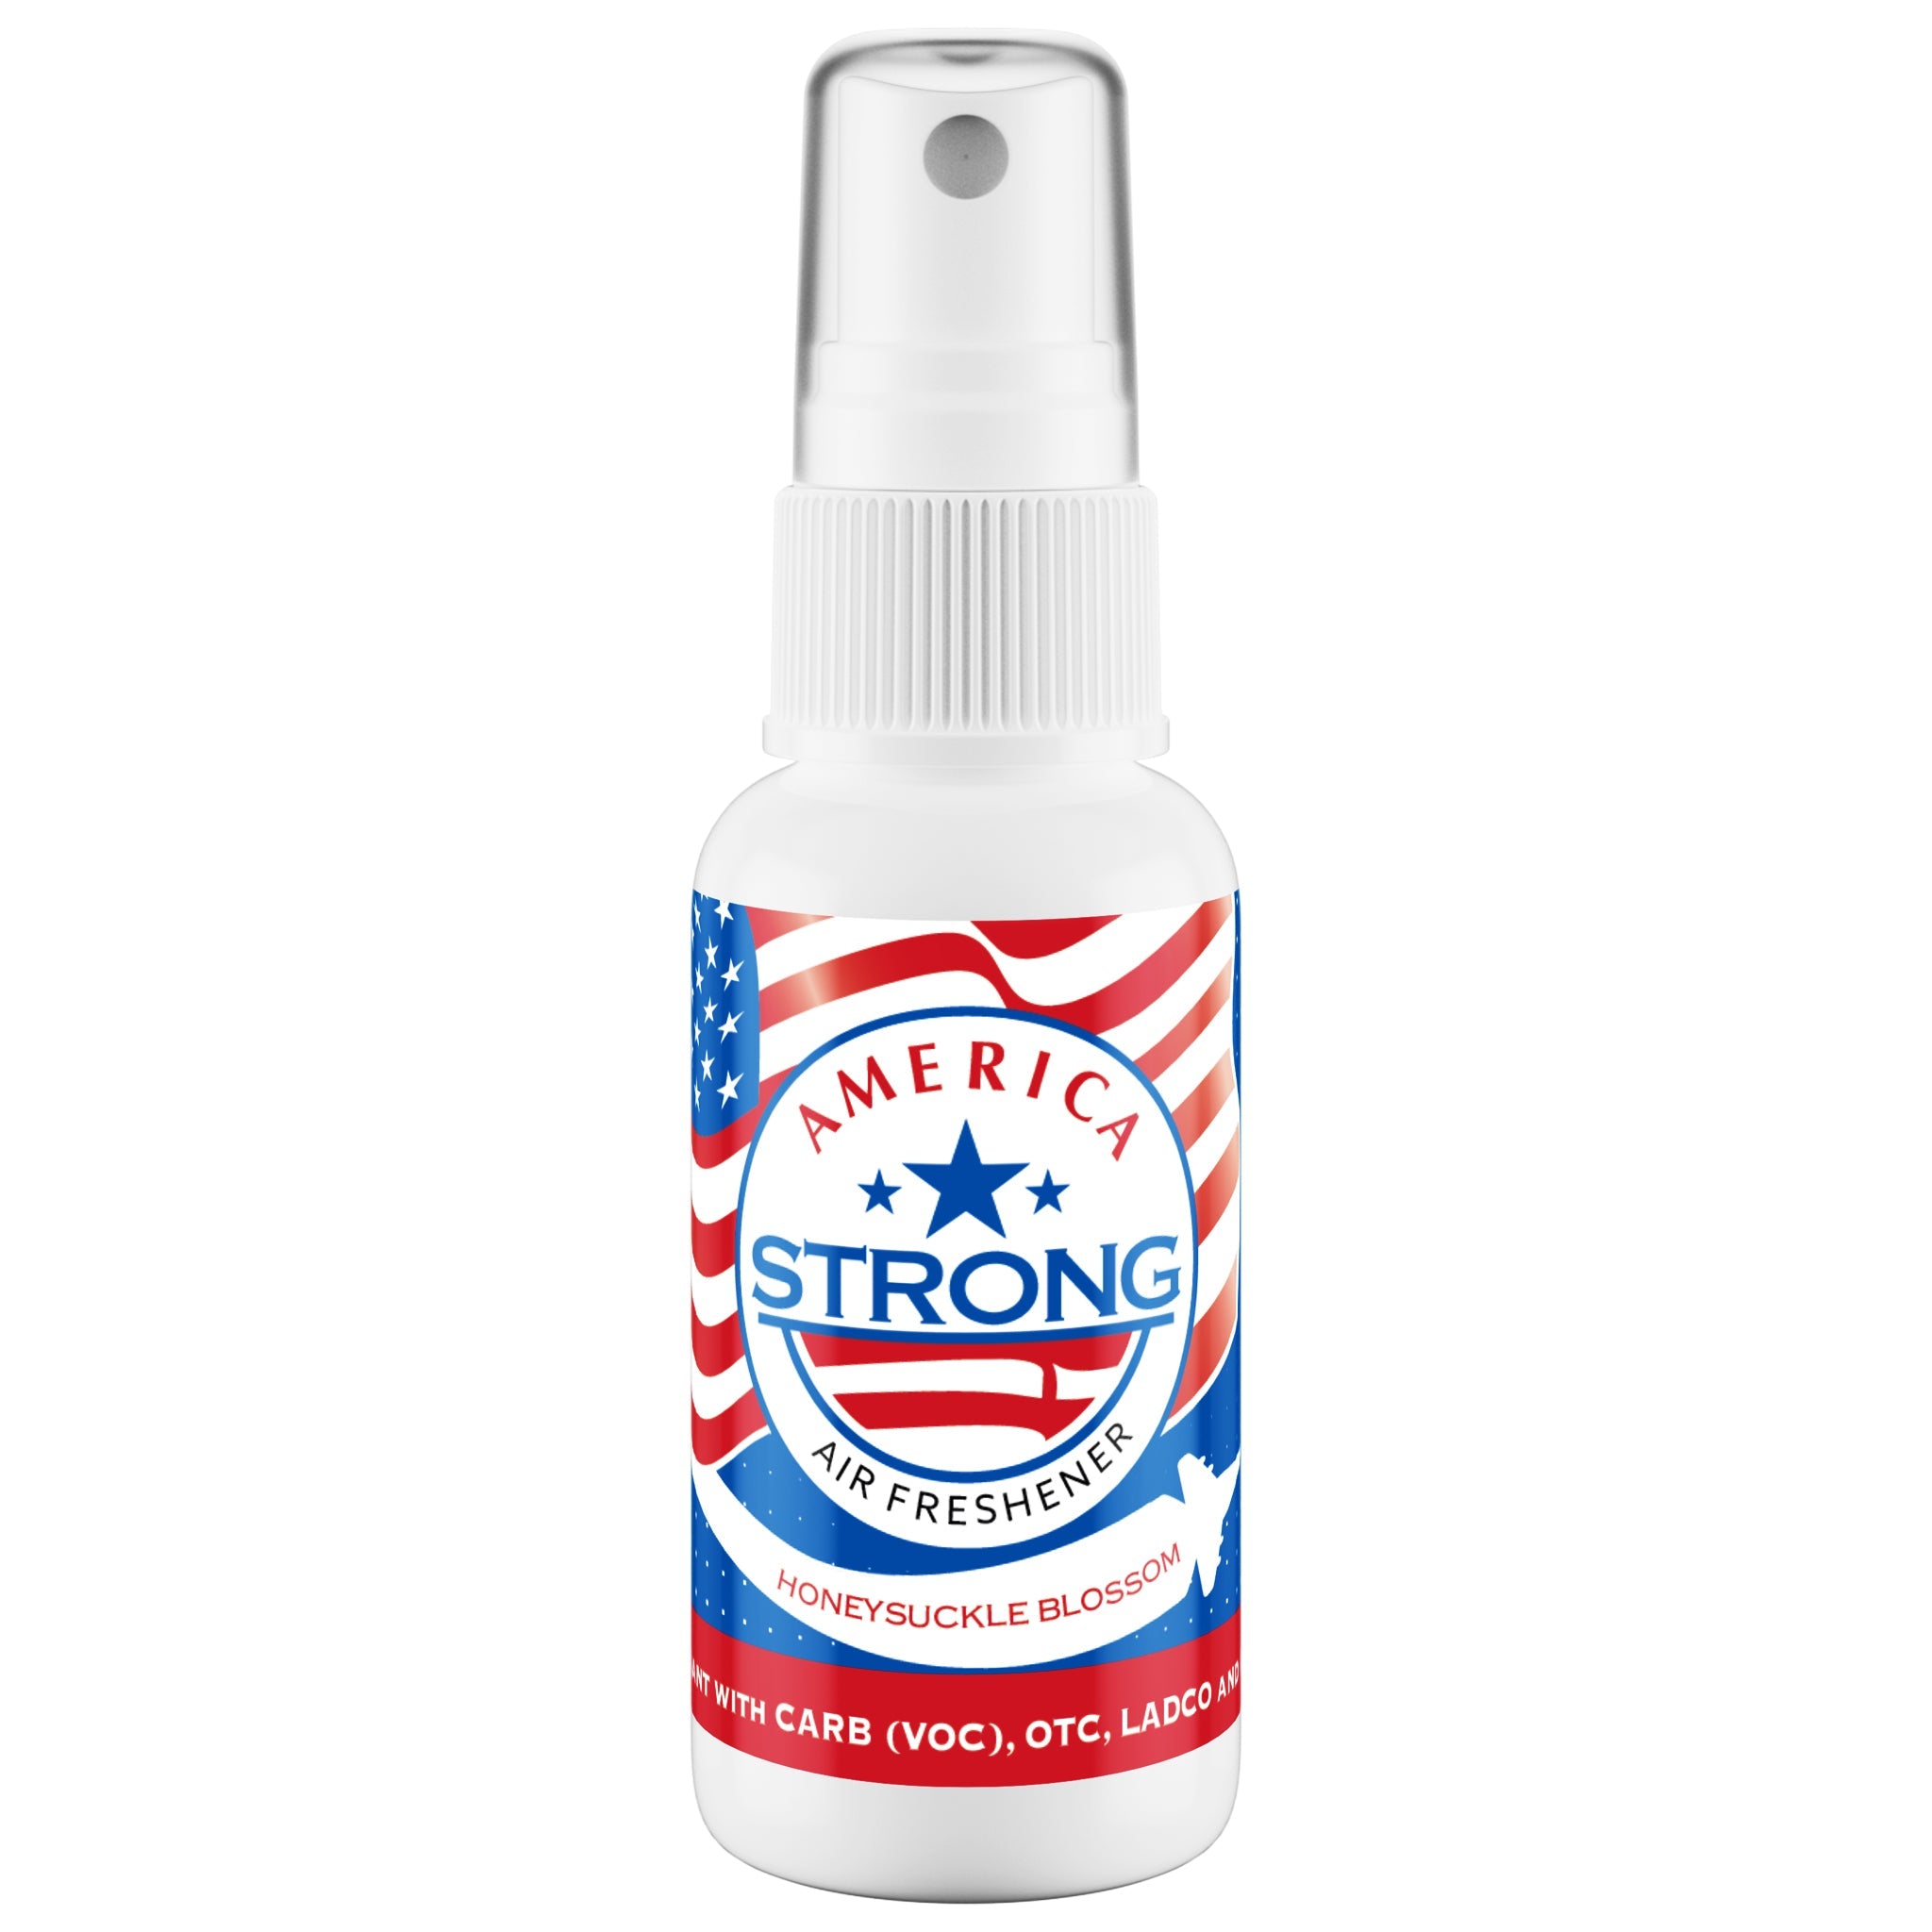 America Strong Air Freshener - Honeysuckle Blossom Scent